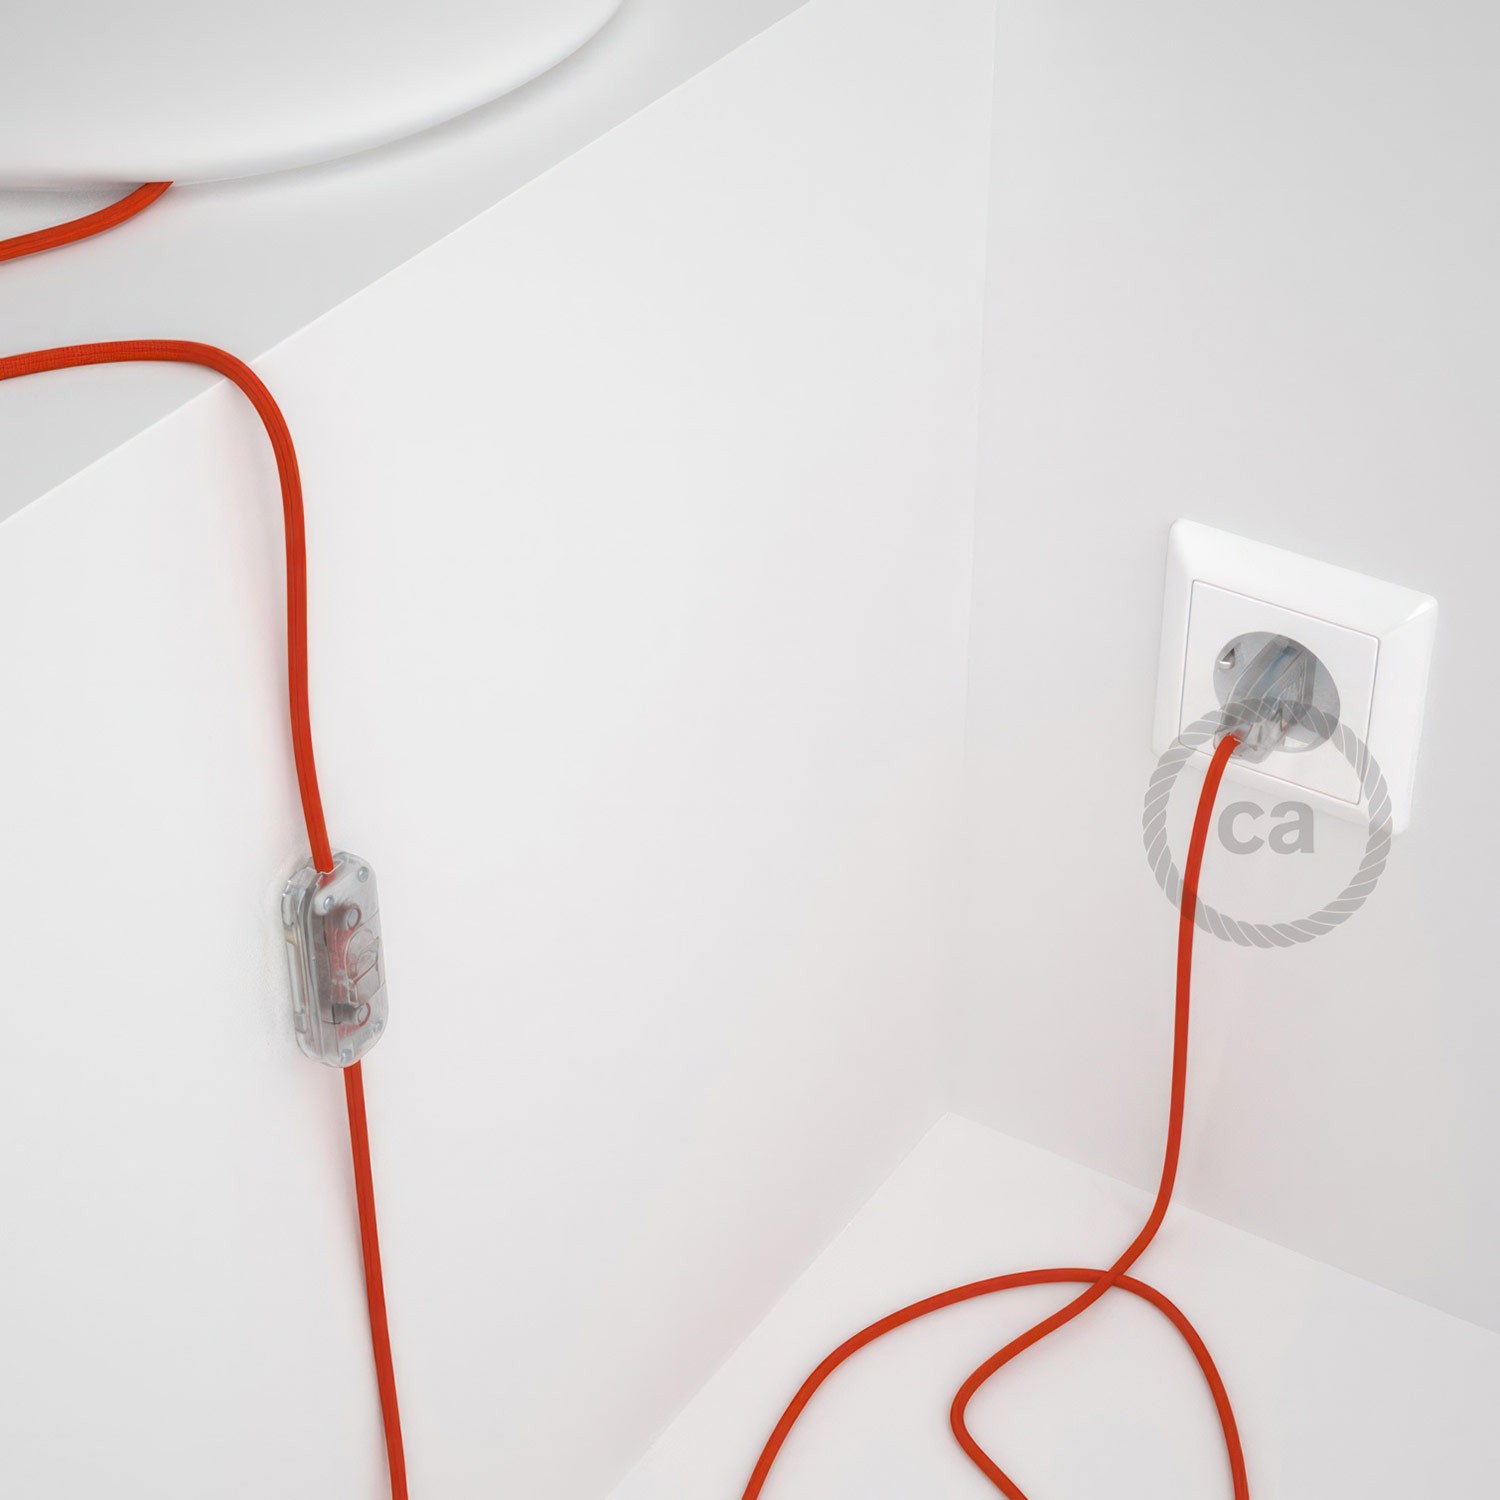 Cableado para lámpara, cable RM15 Efecto Seda Naranja 1,8m. Elige tu el color de la clavija y del interruptor!